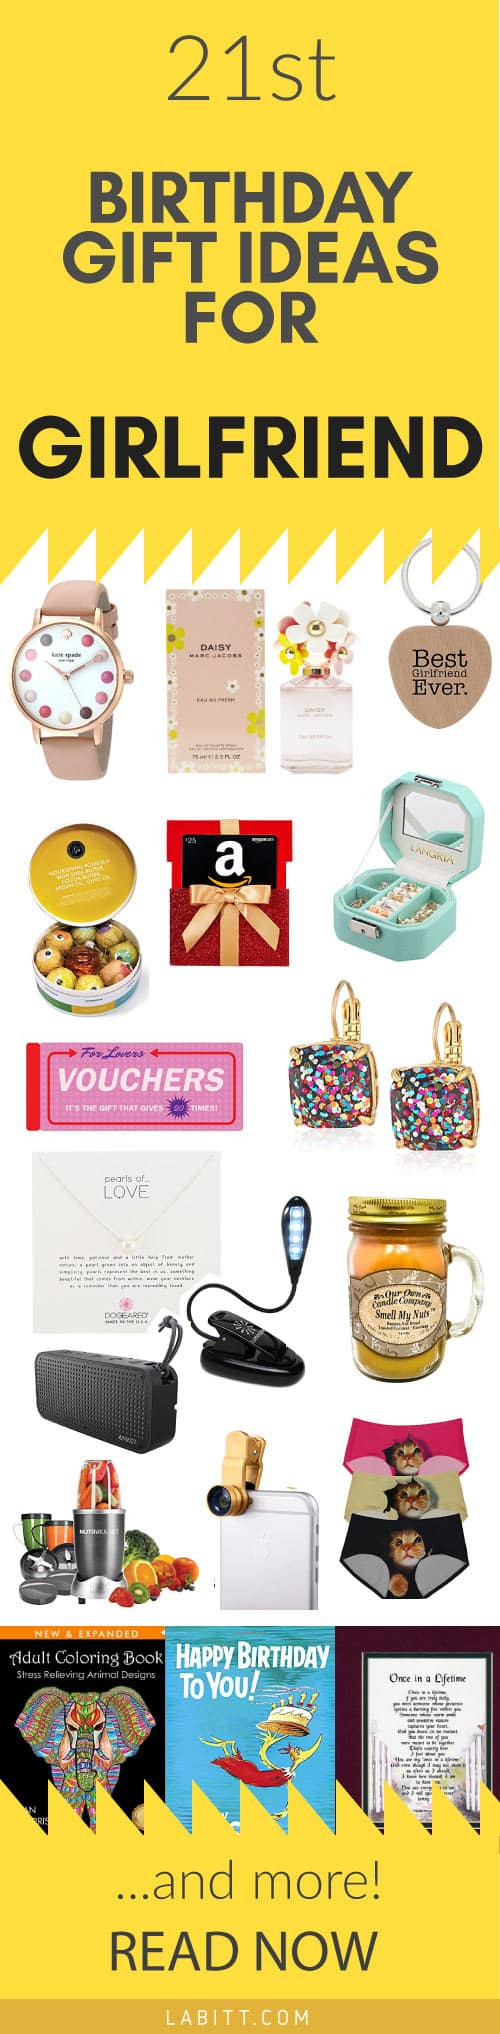 Best ideas about Girlfriend Birthday Gift Ideas
. Save or Pin Creative 21st Birthday Gift Ideas for Girlfriend 21 Now.